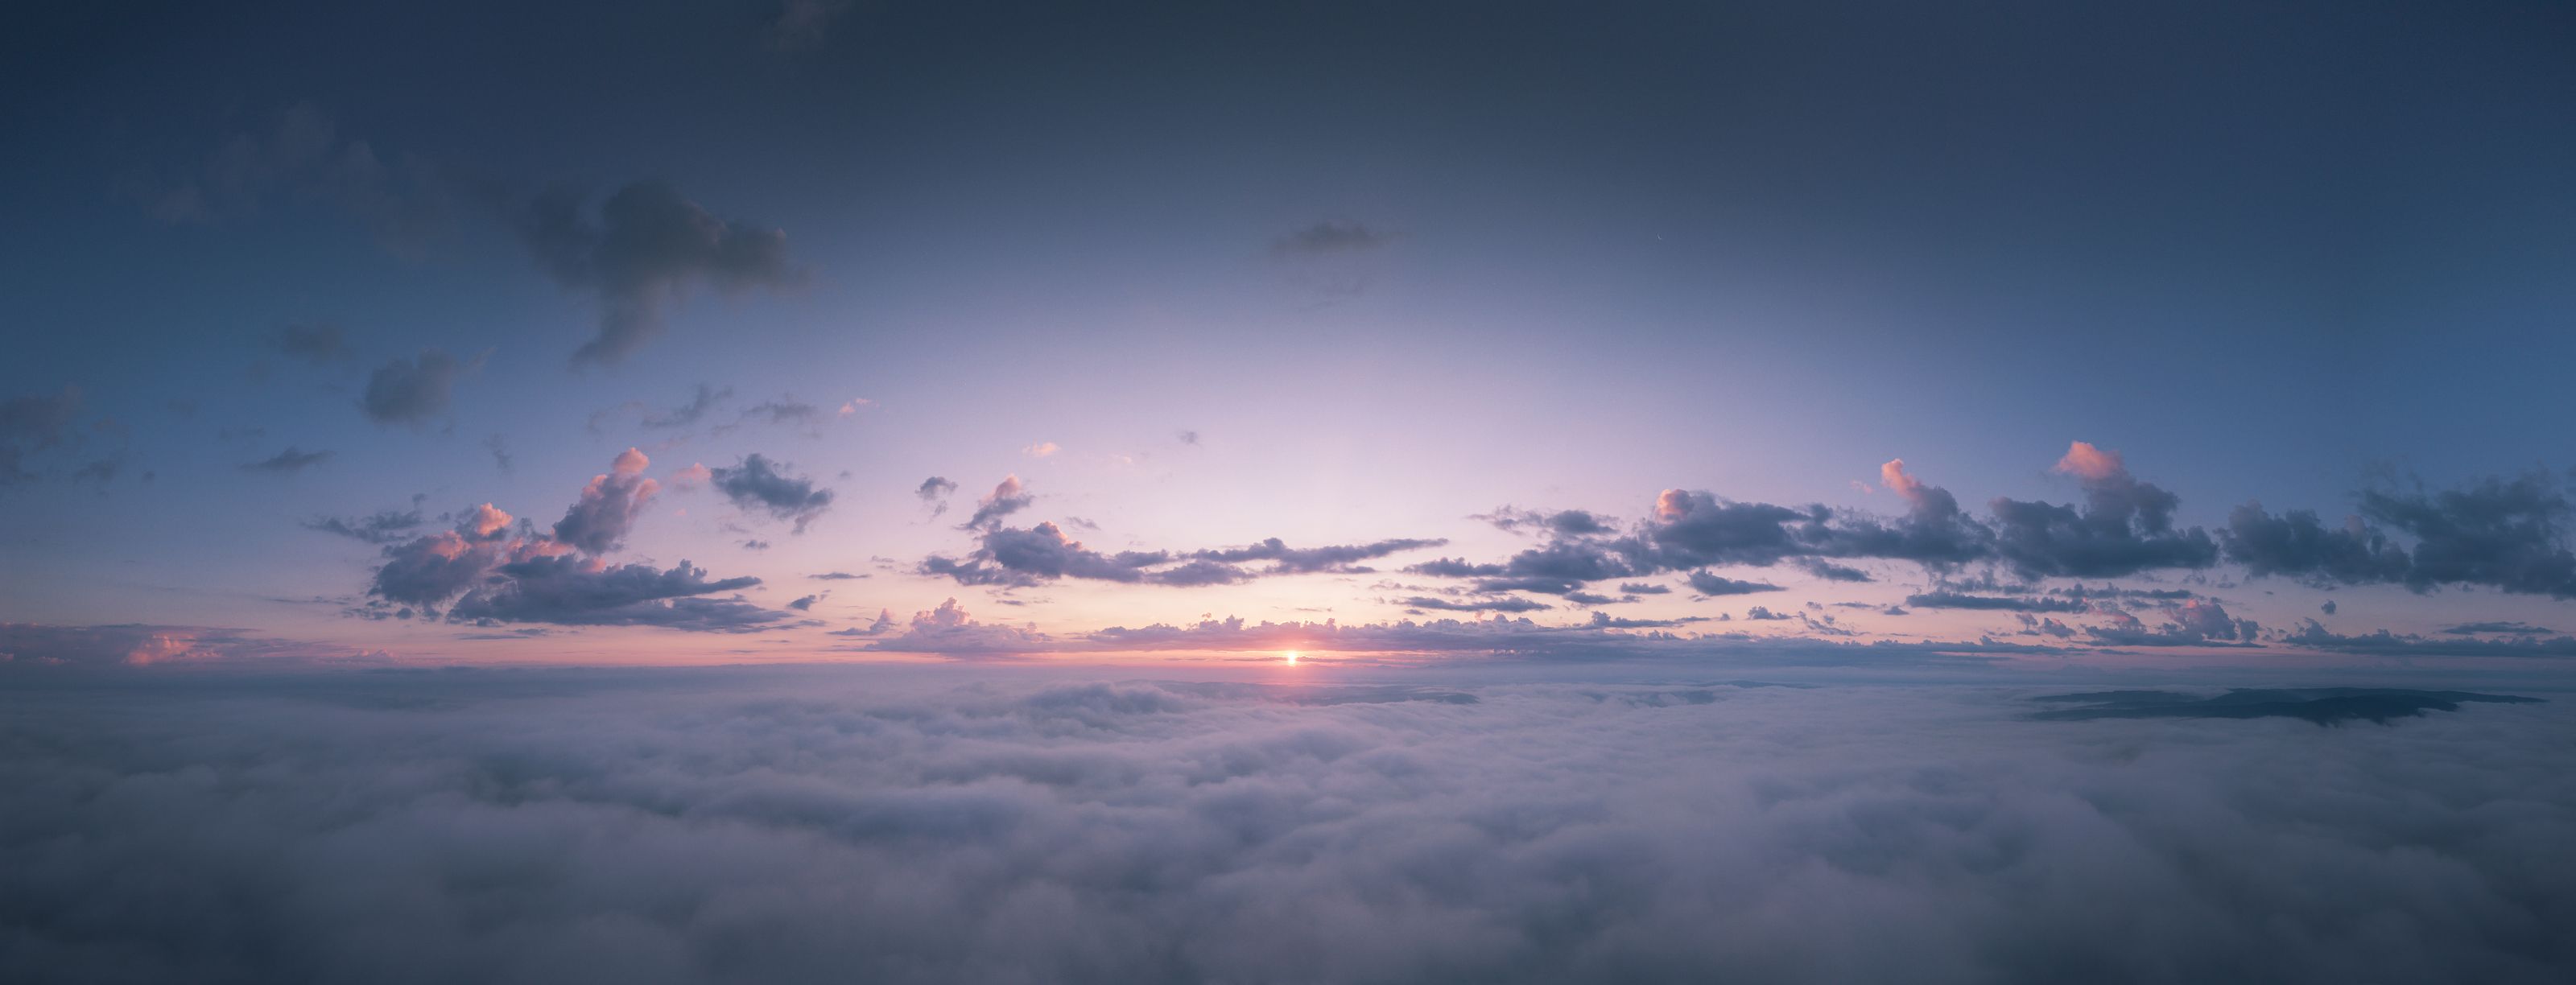 облака, рассвет, туман, горная шория, Владимир Гущин